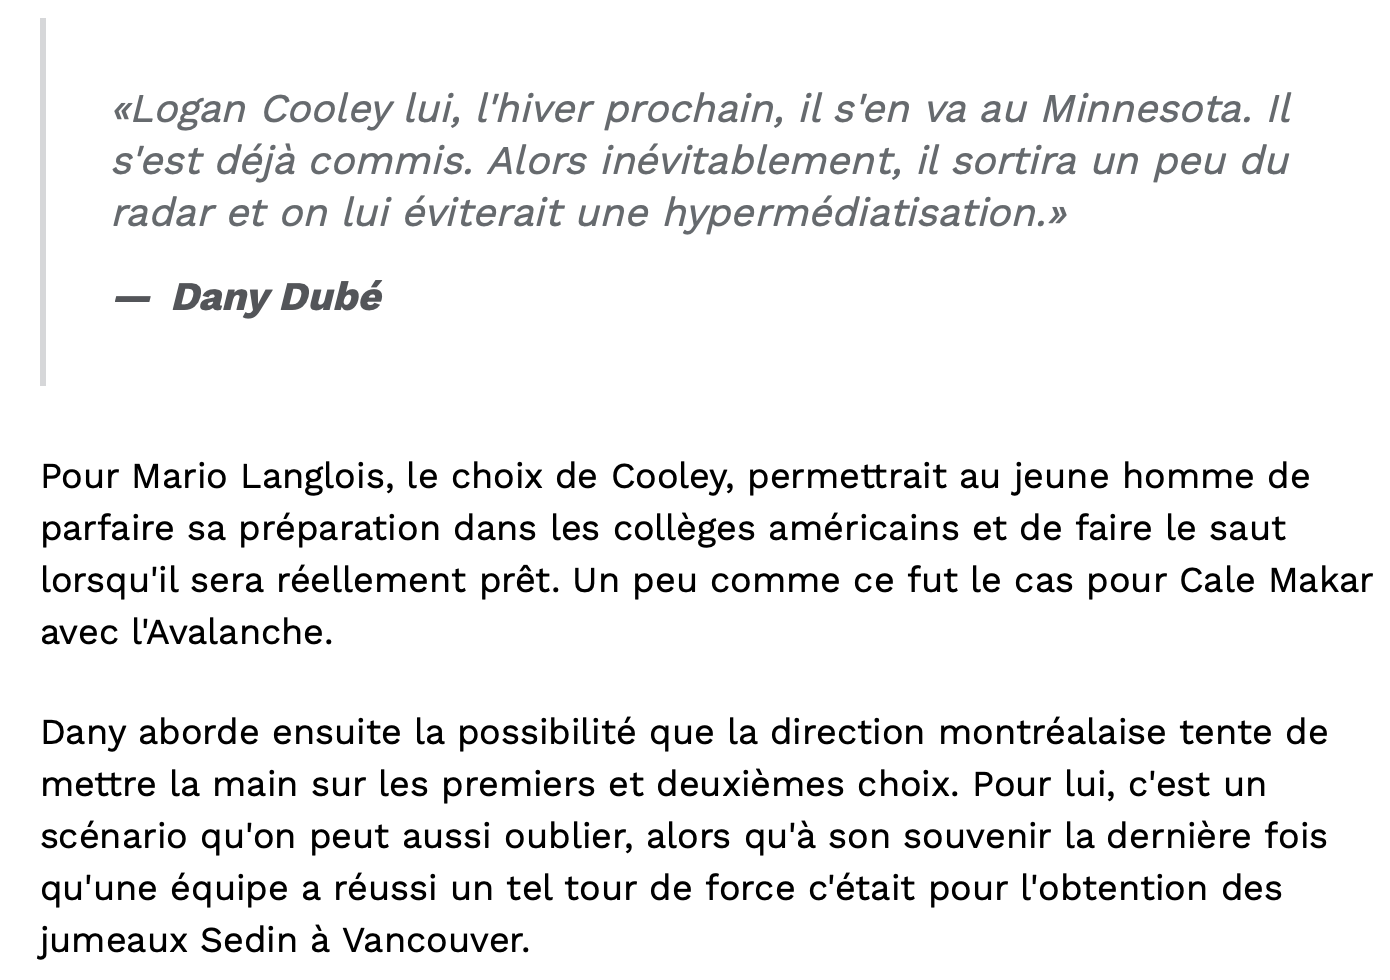 Dany Dubé envoie Logan Cooley à Montréal!!!!